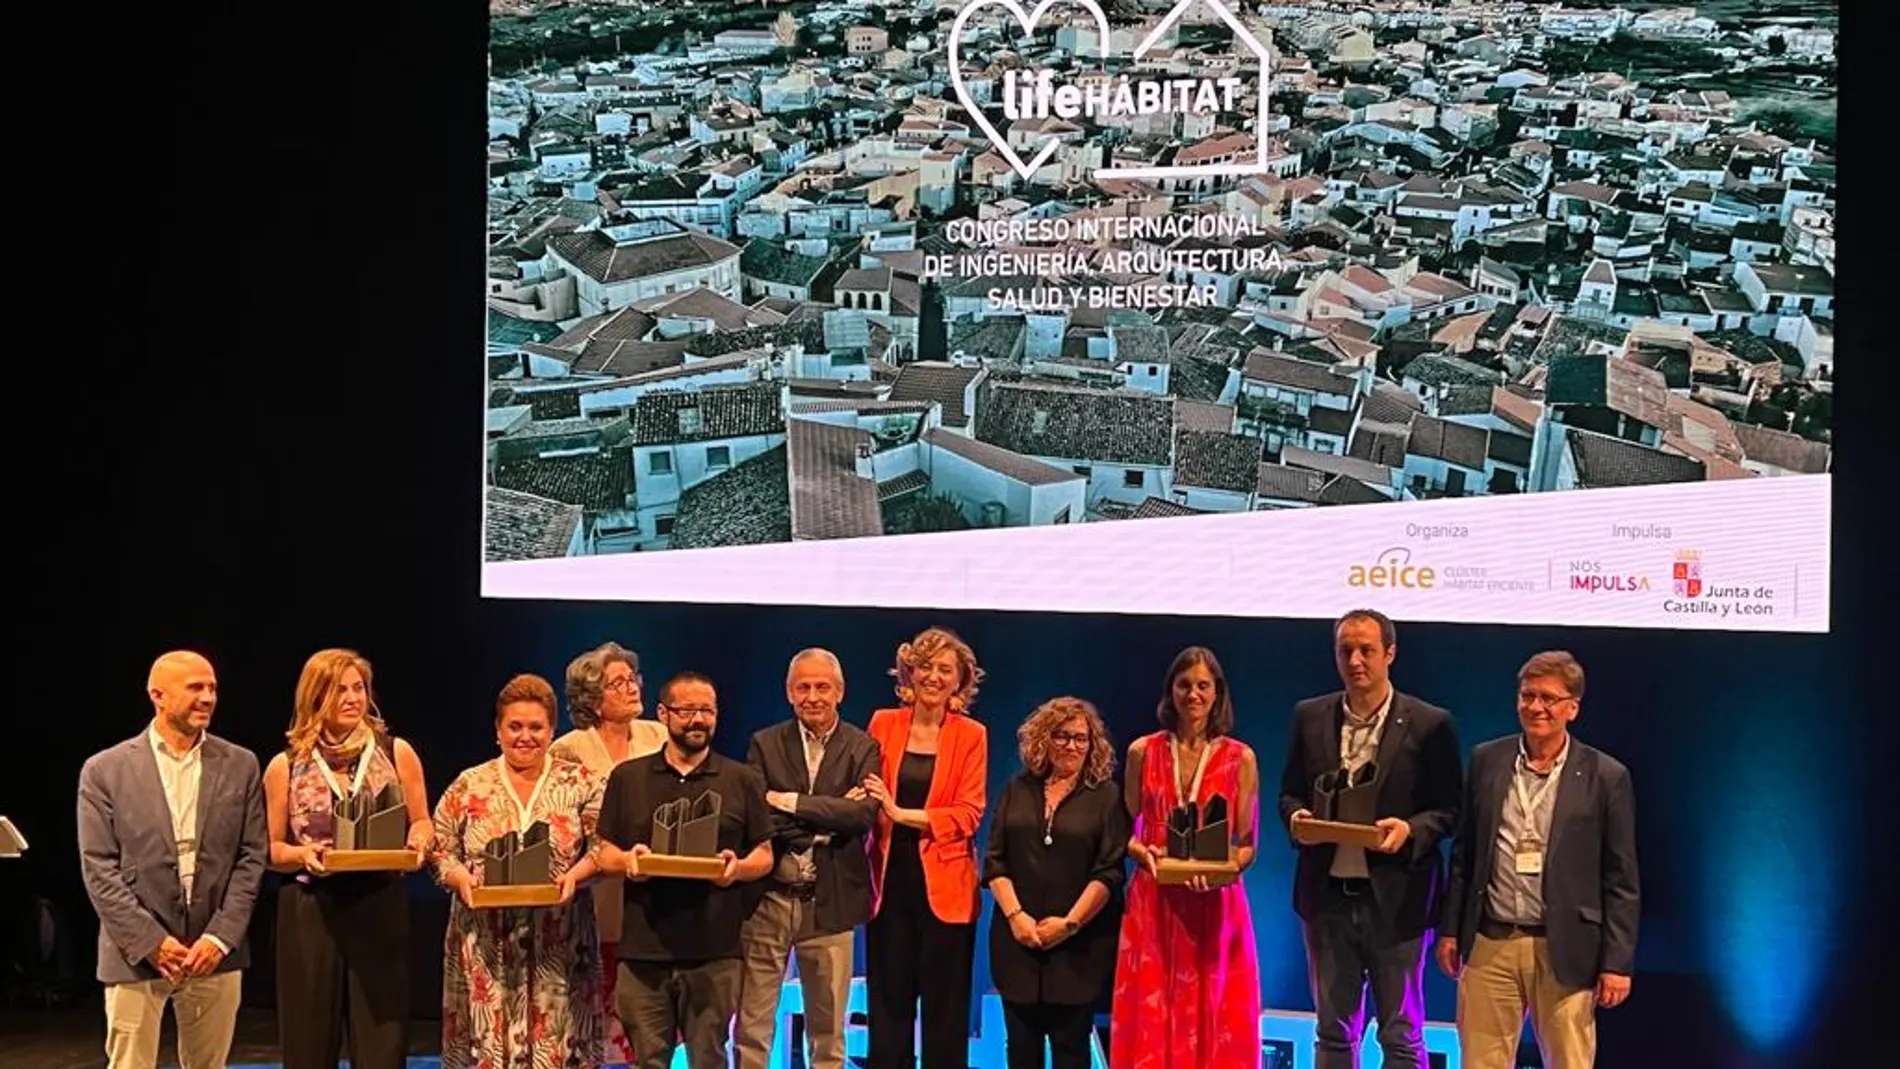 Lab Aspace Makers ha sido galardondado con unos de los premios "Life Habitat 2022"